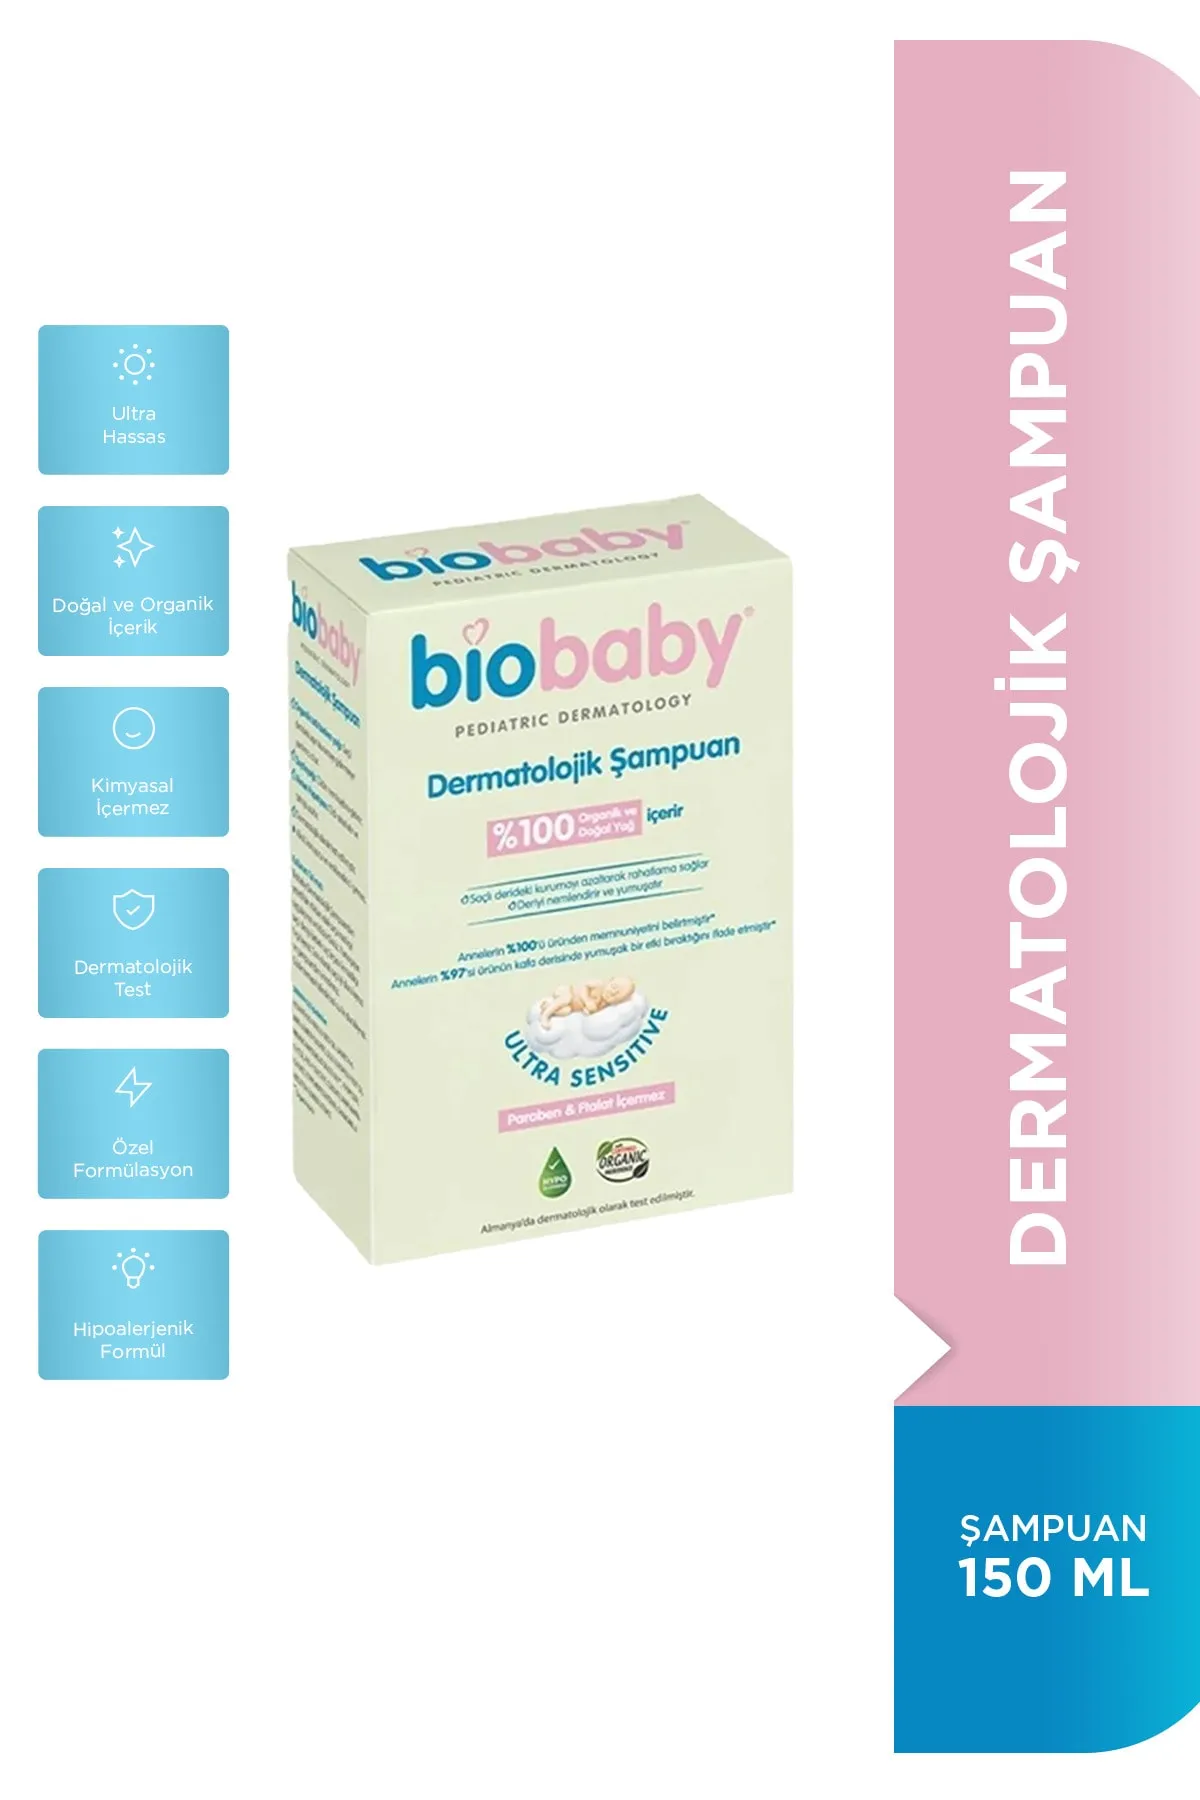 Biobaby Dermatolojik Şampuanı 150 Ml - 1